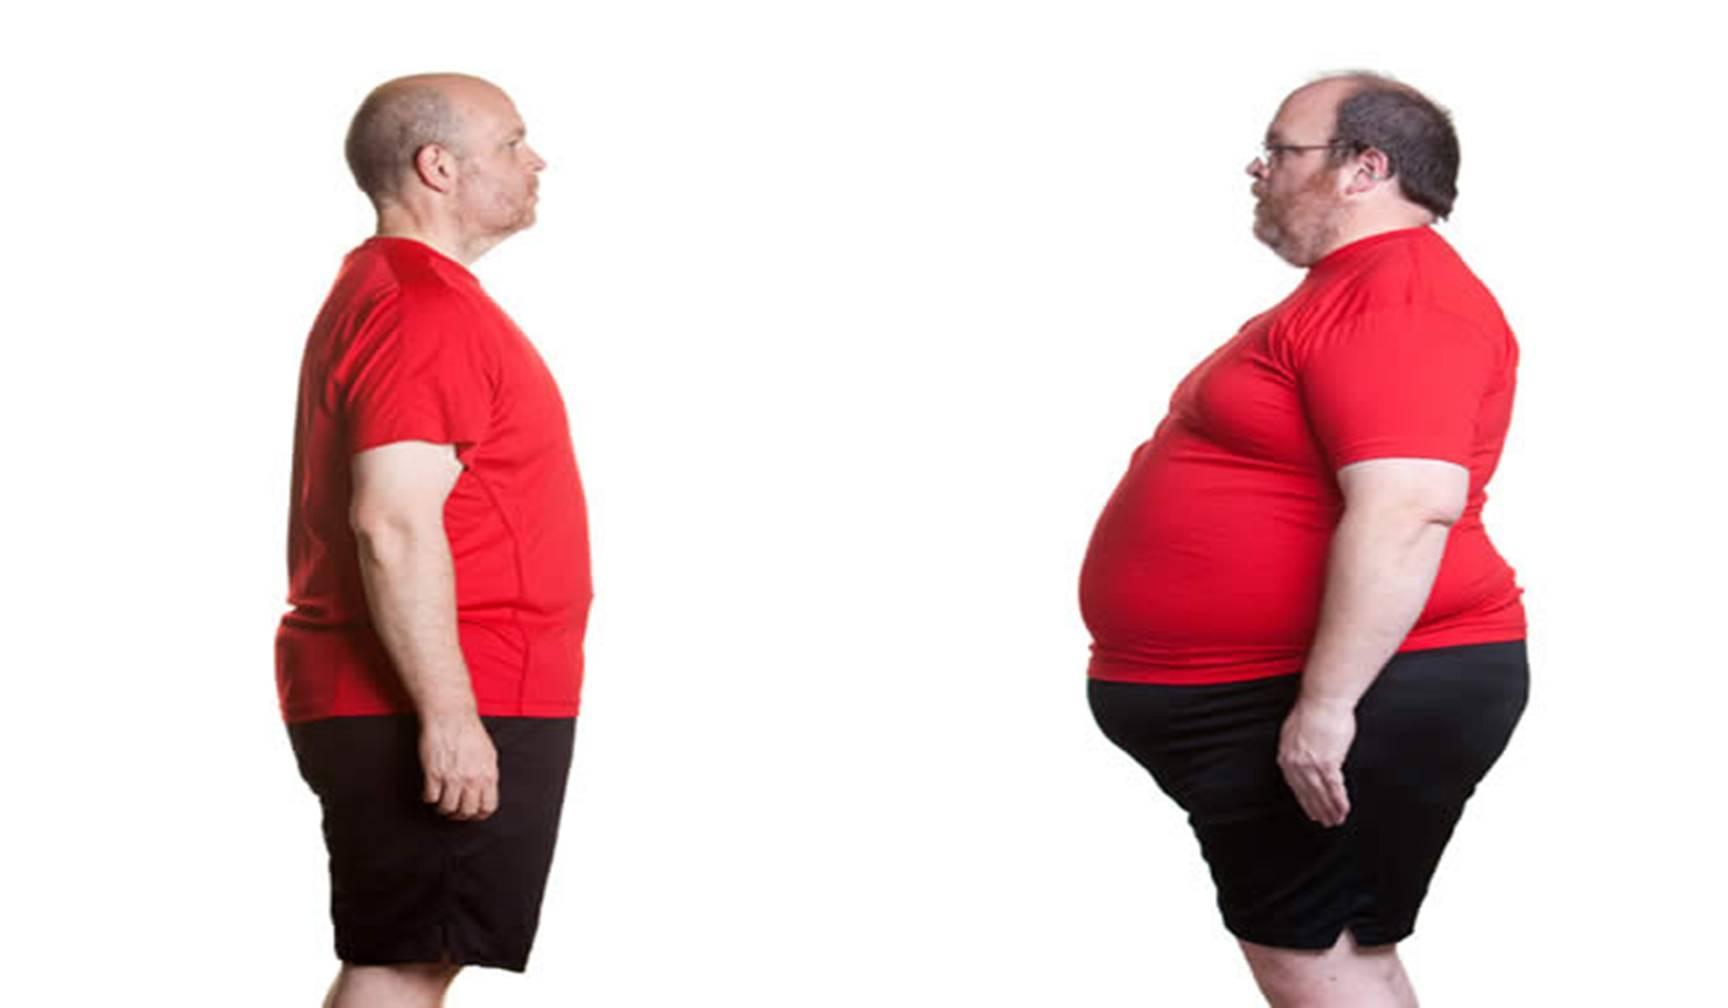 ना करनी है डायटिंग ना ही जिम बस कुछ करने हैं बहुत ही आसान से काम जो कर देंगे मोटापा कम